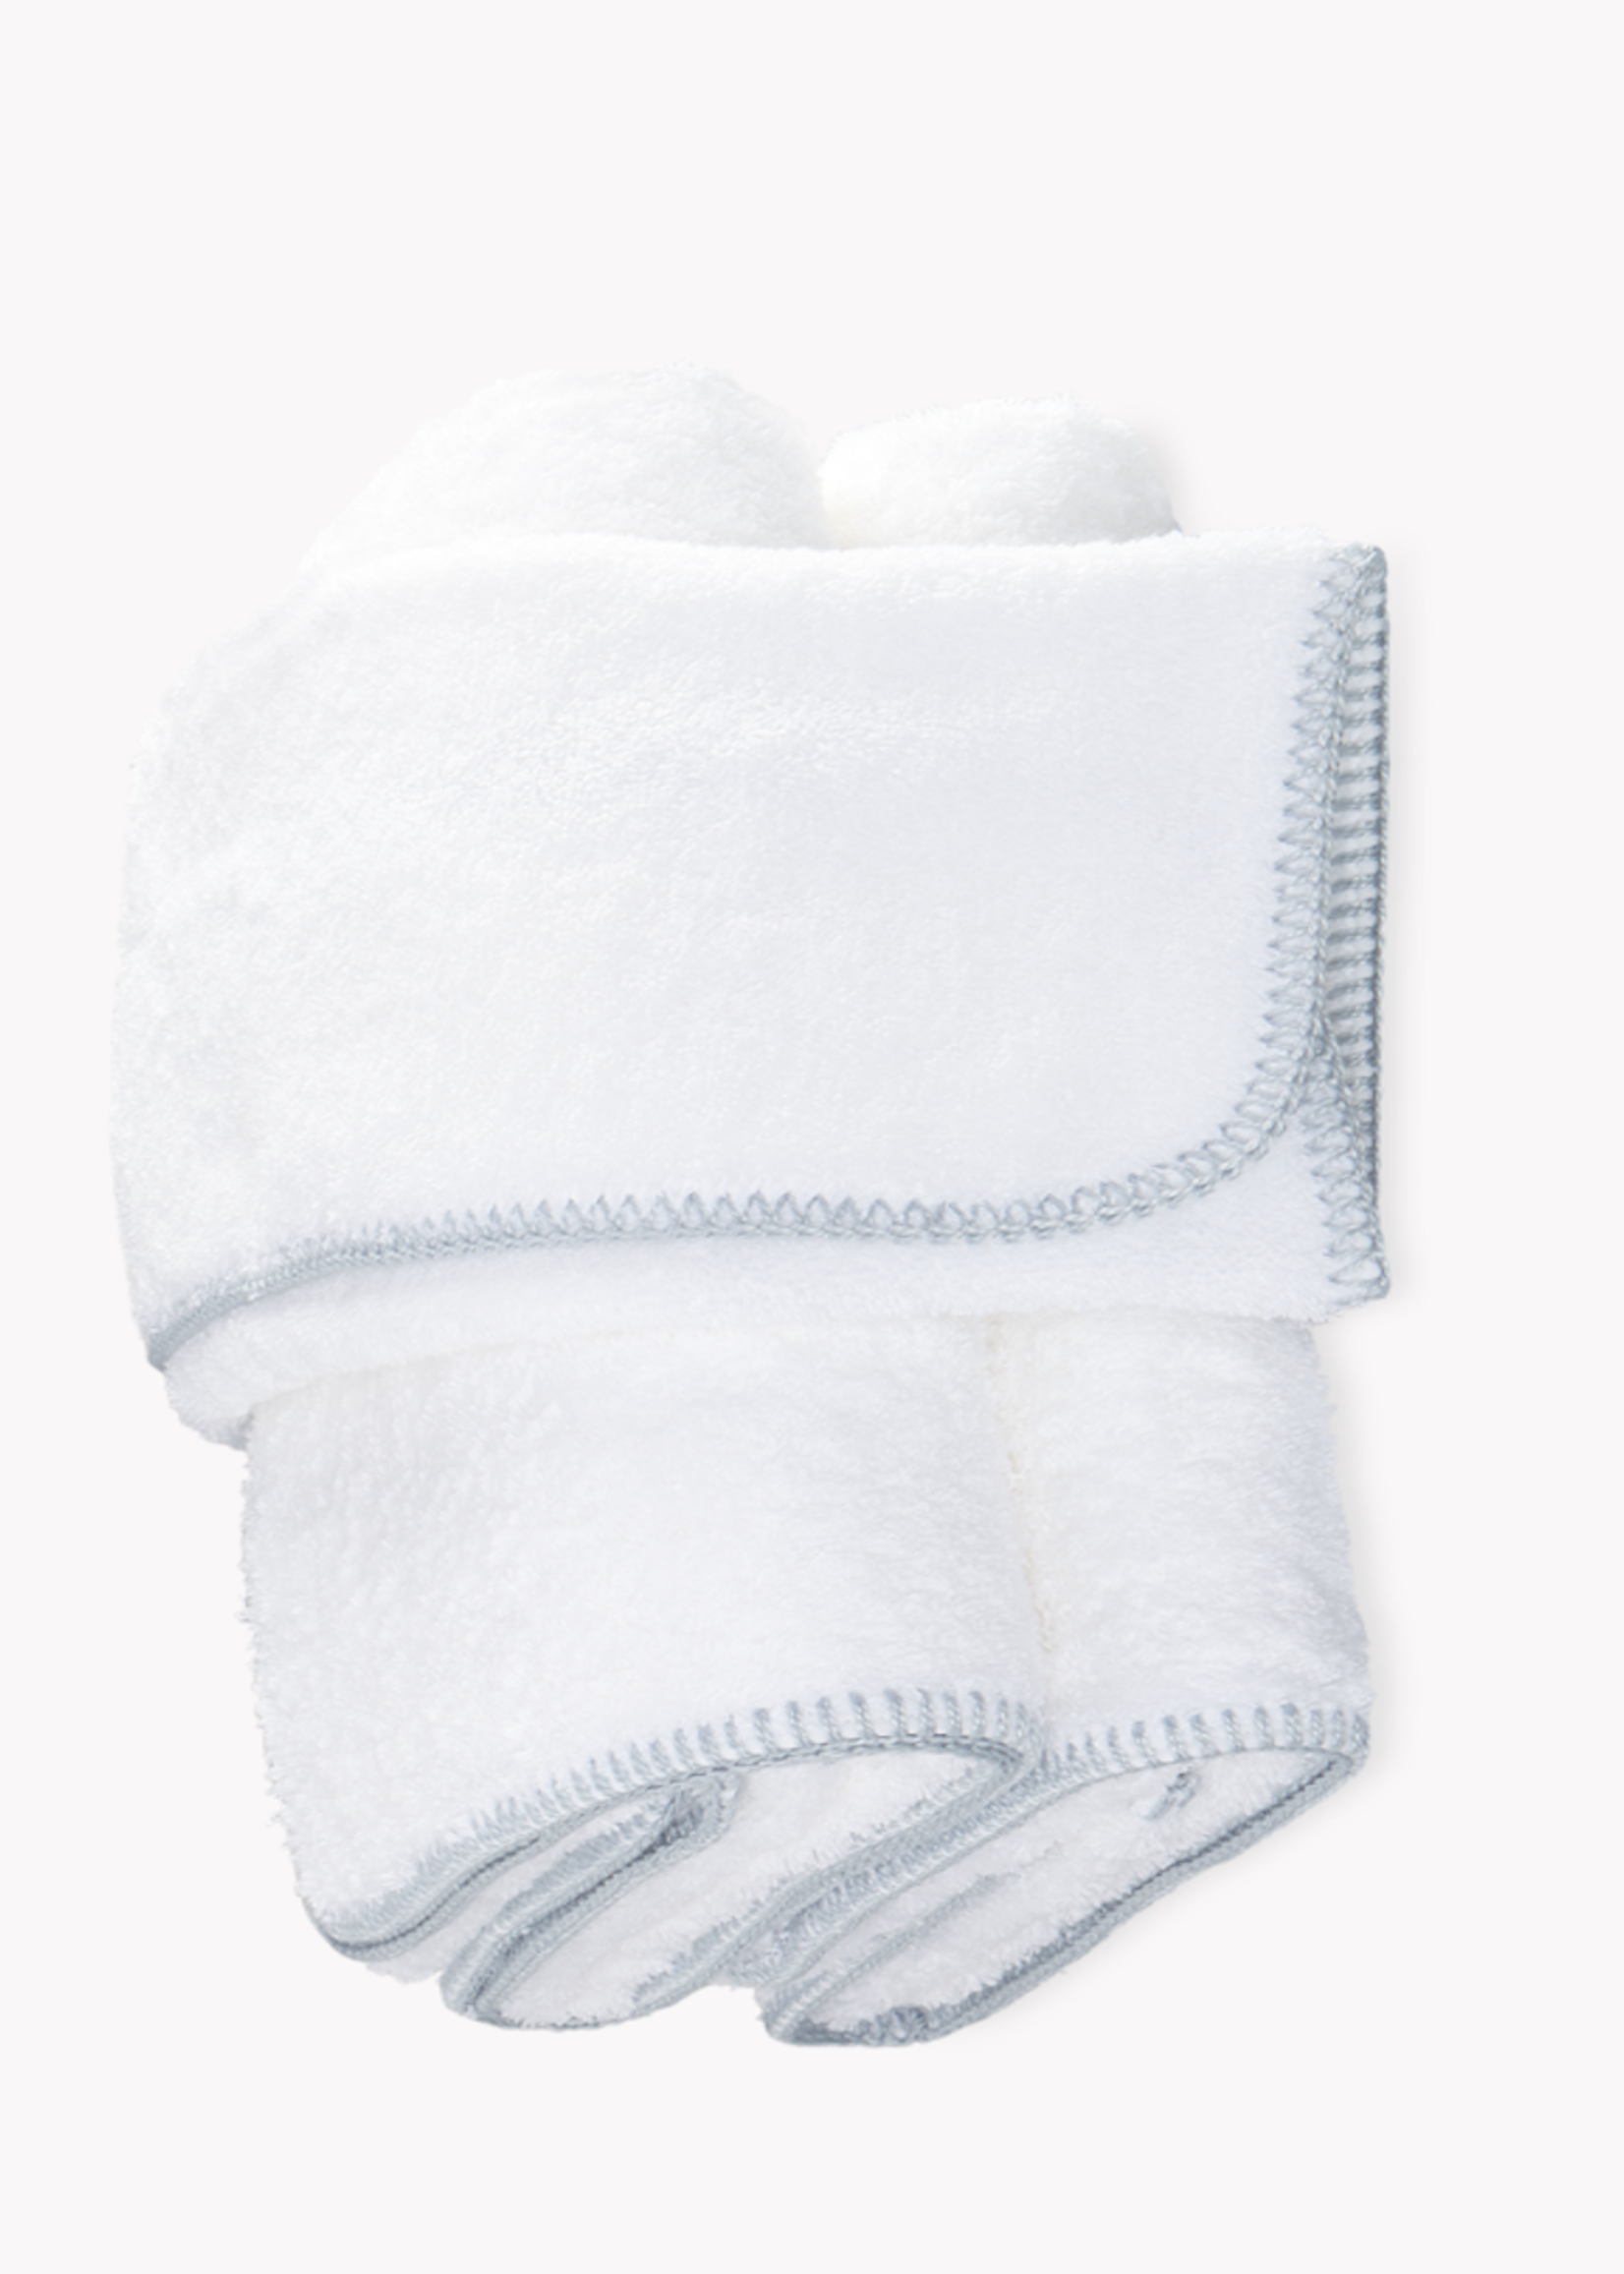 Matouk Matouk Whipstitch Bath Towels